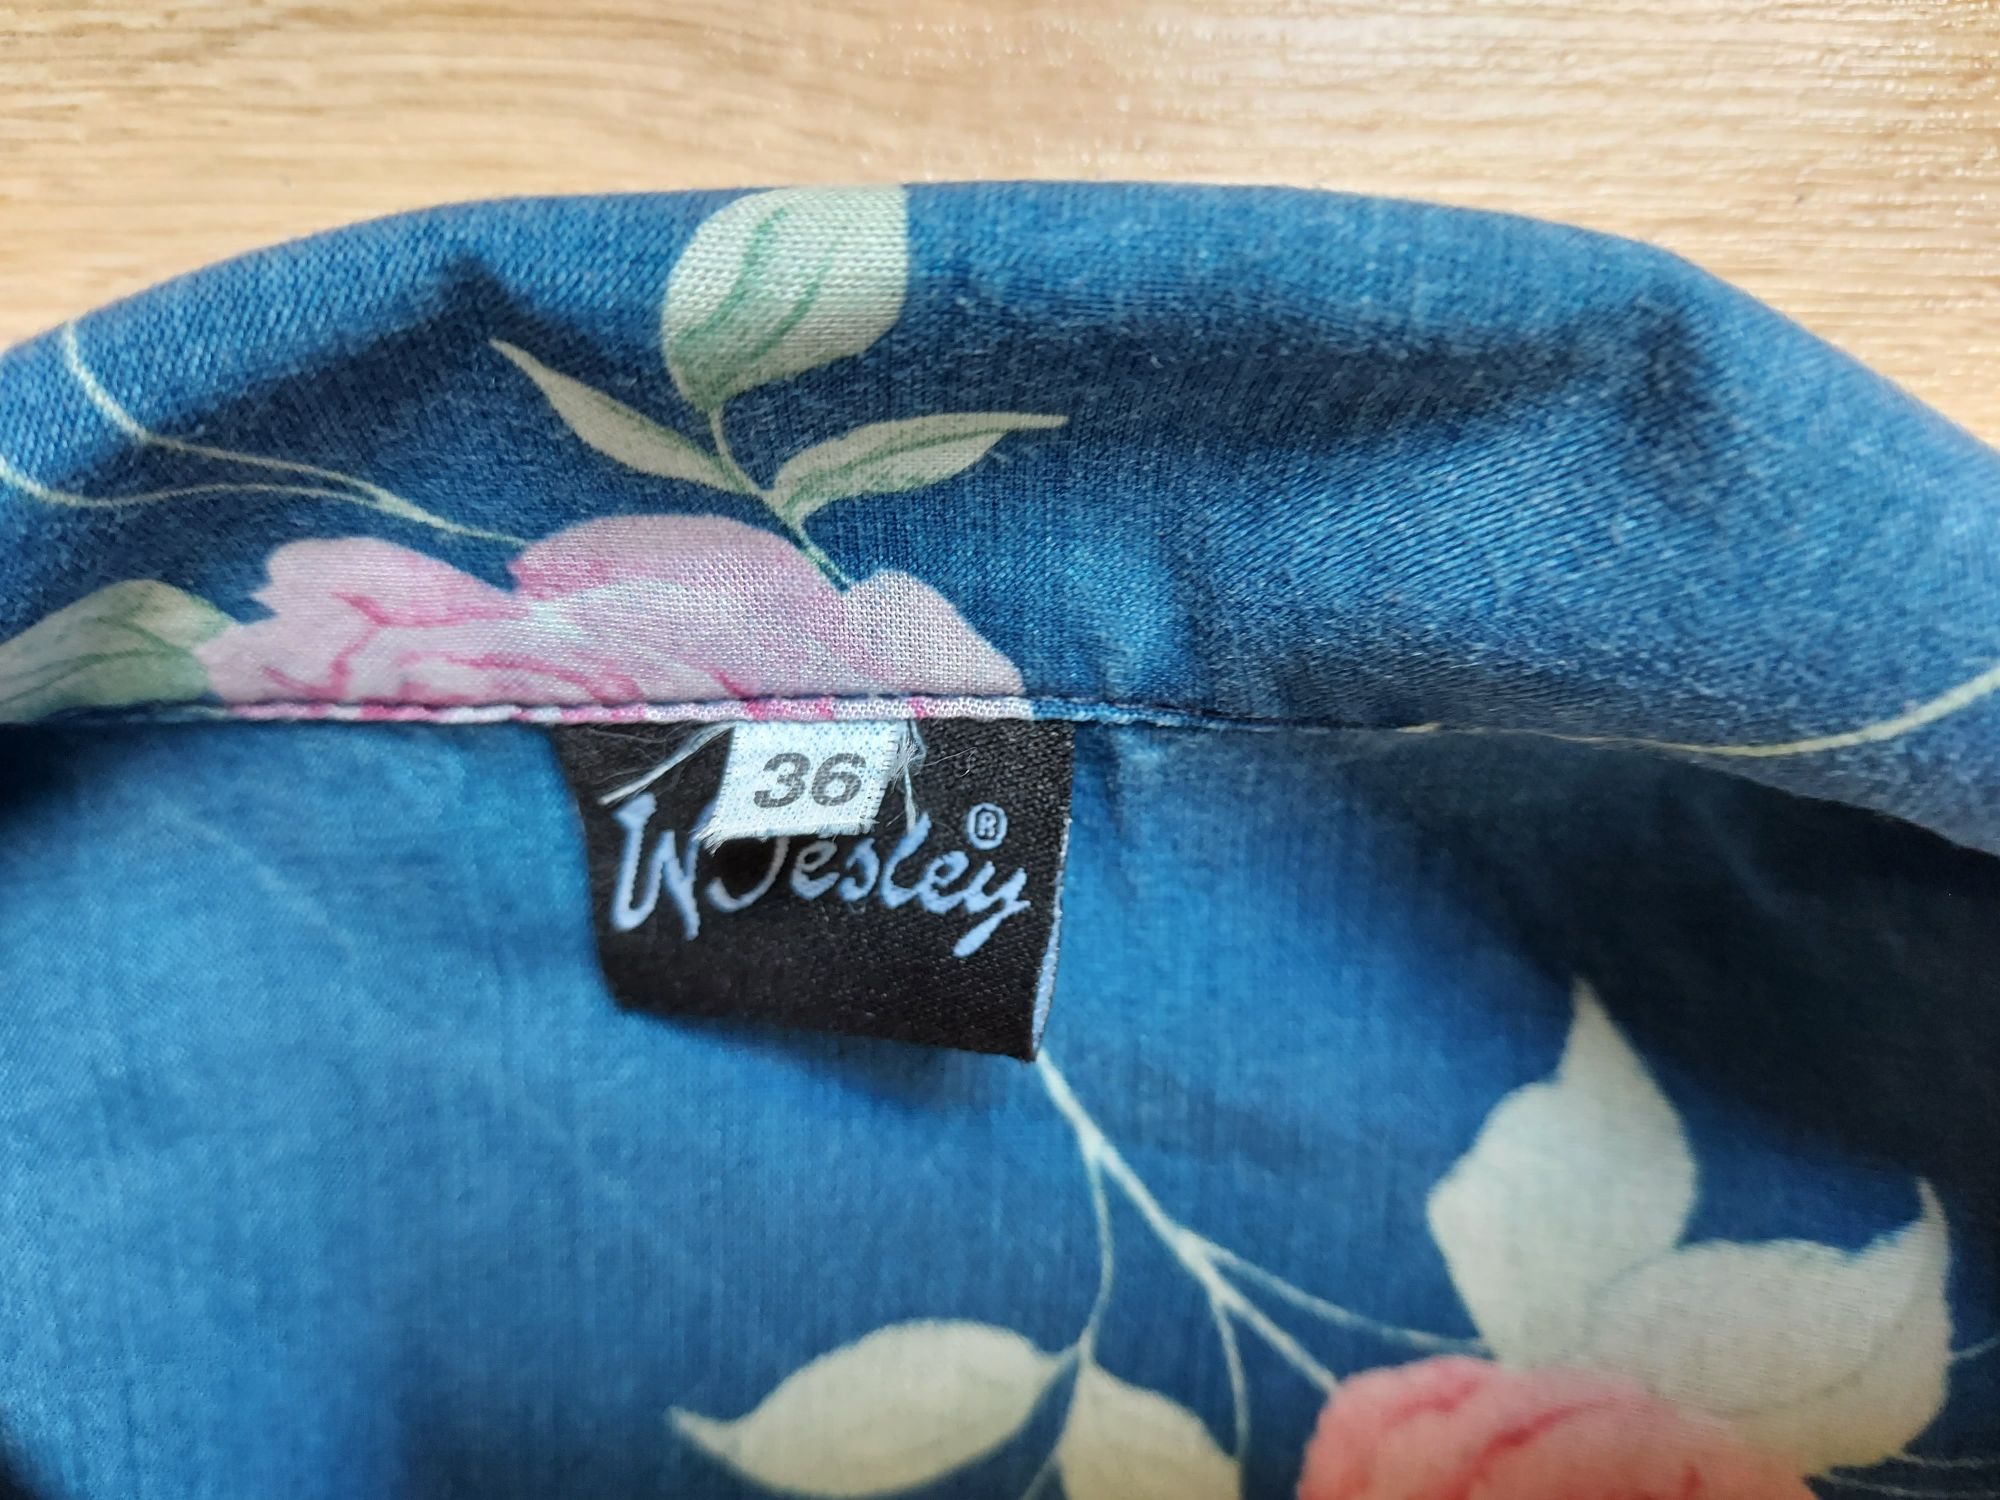 Niebieska lekka bluza koszulowa w kwiaty wiskoza Wesley S 36